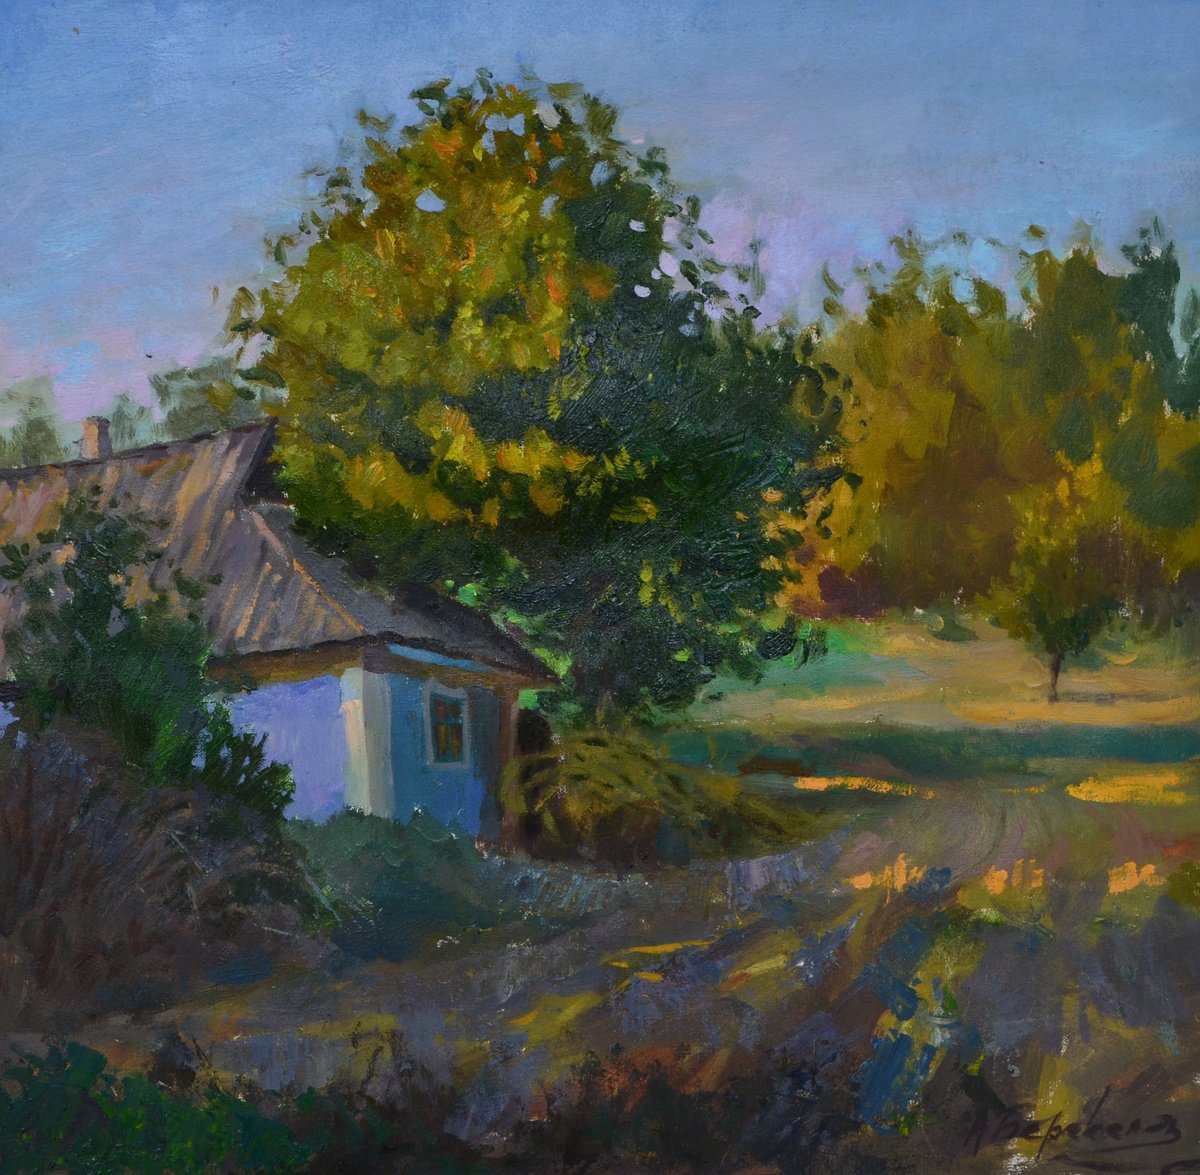 Evening in the Village by Andriy Berekelia